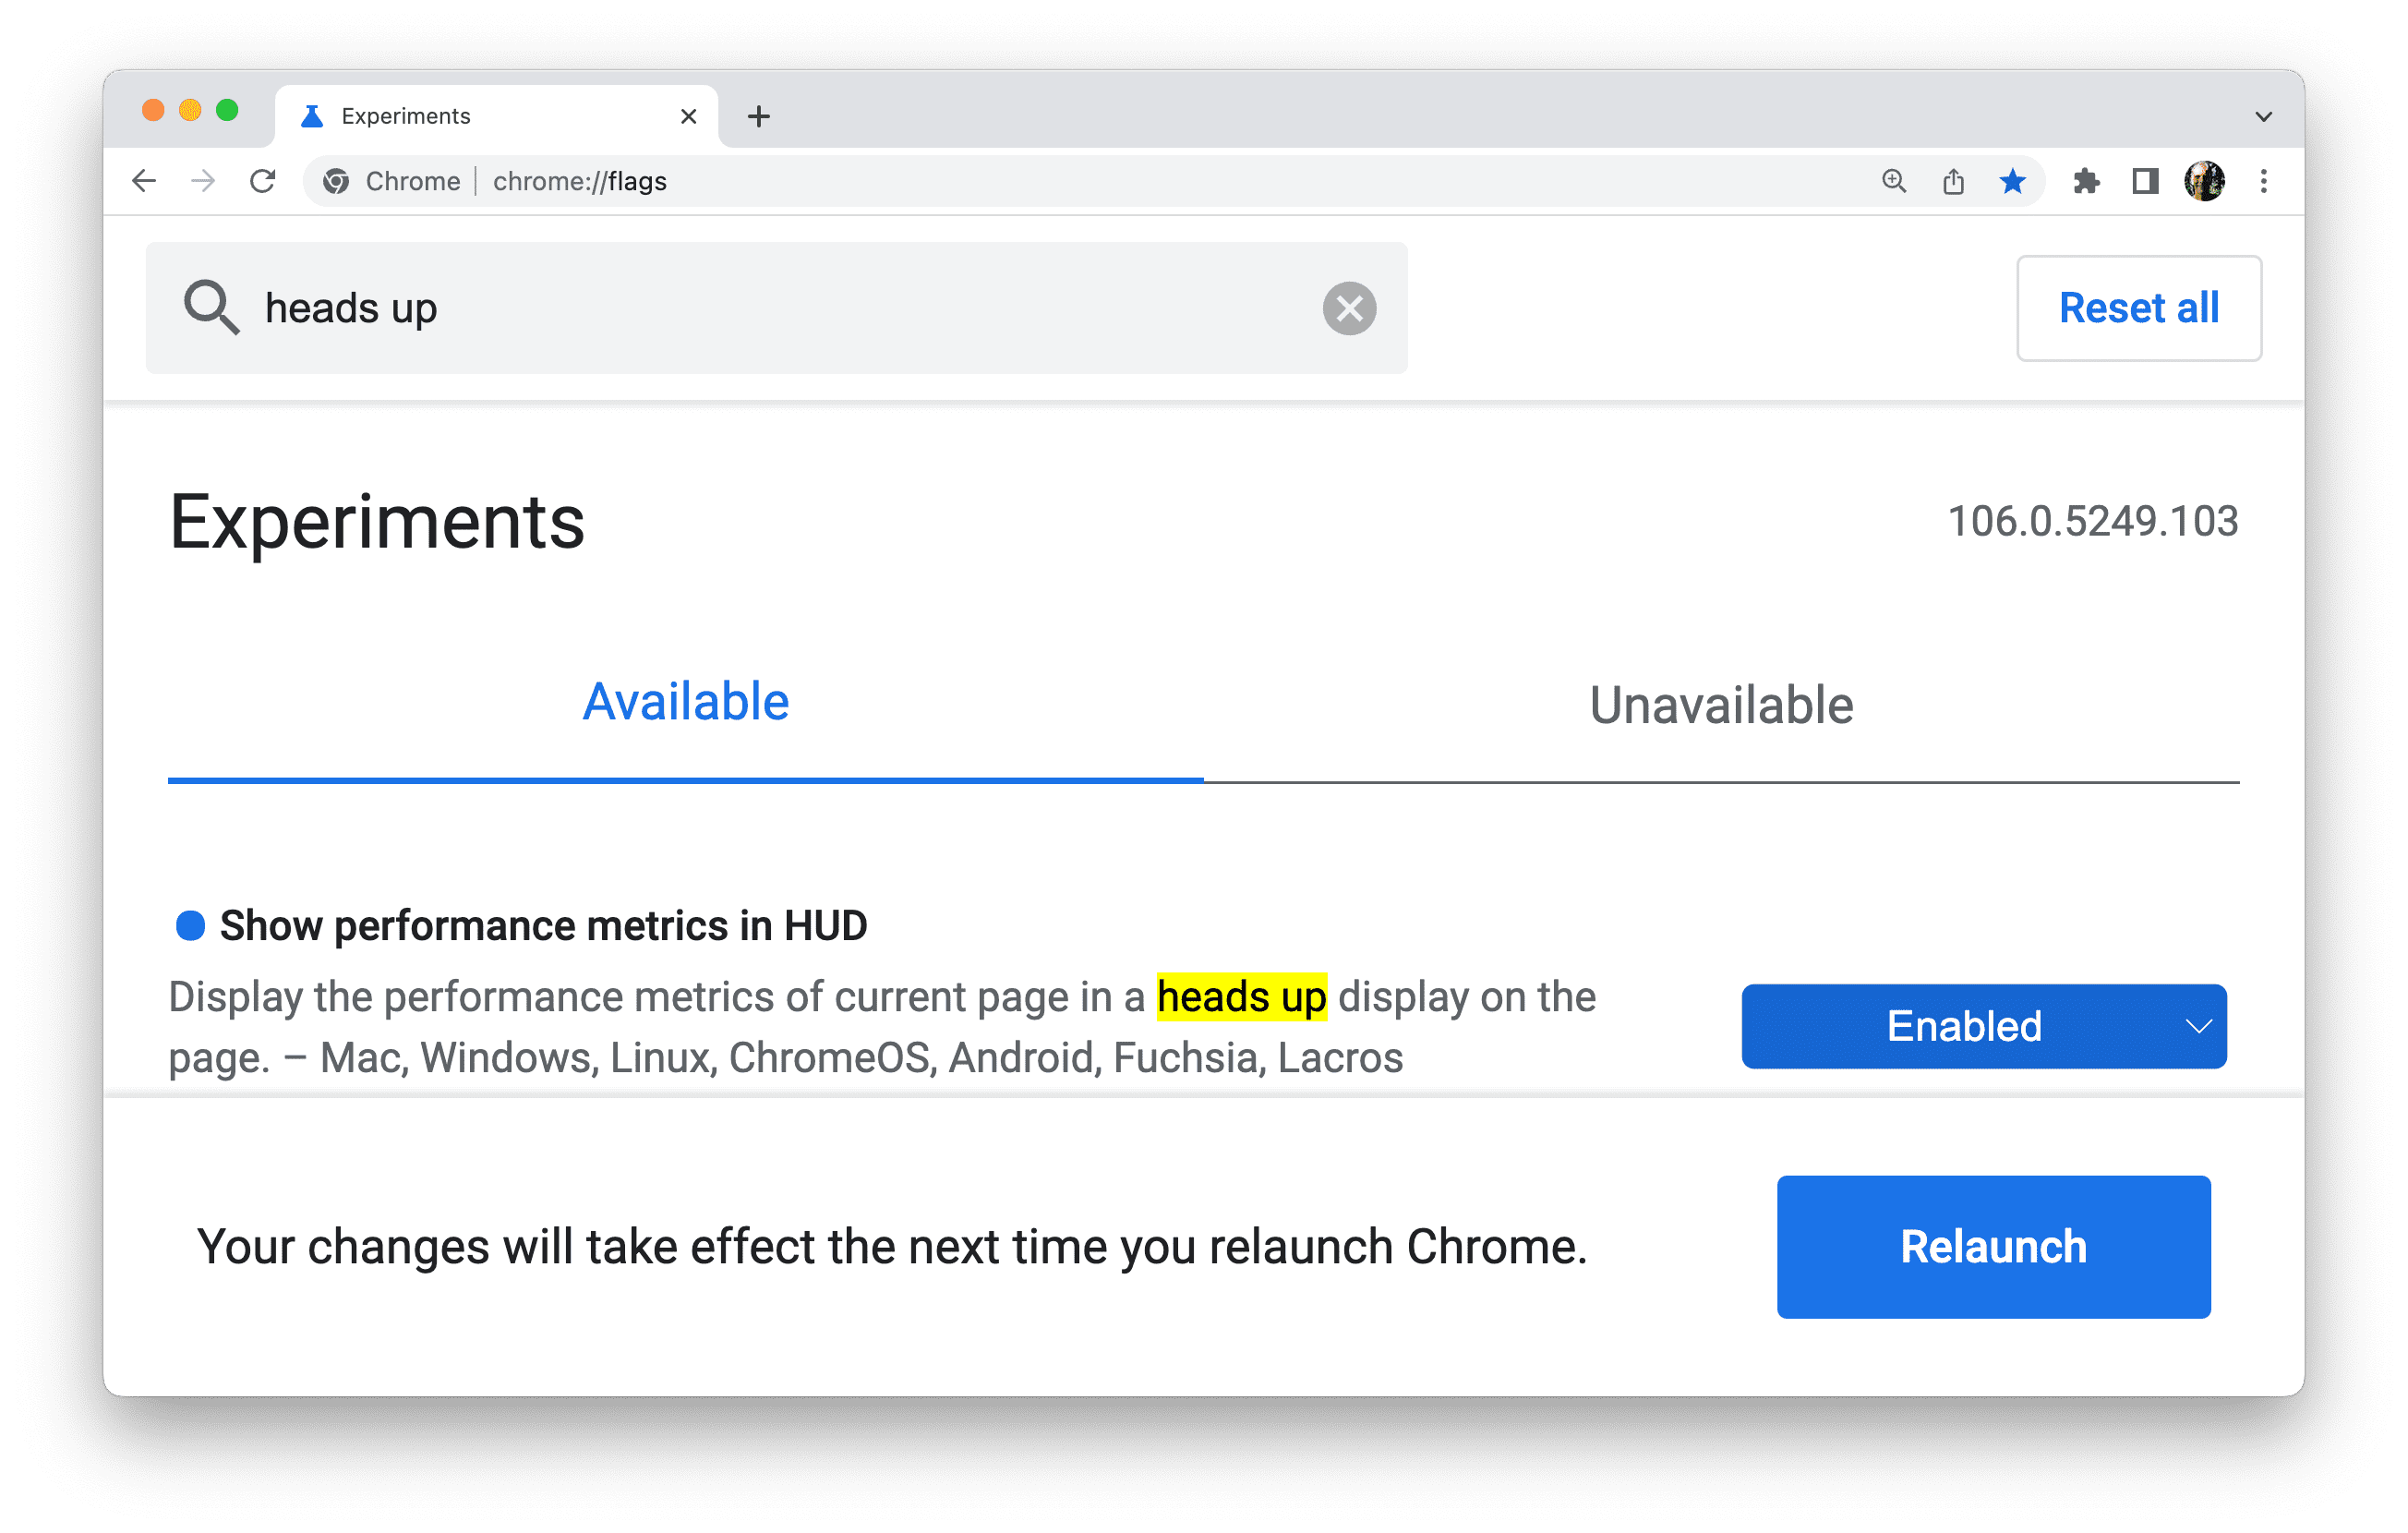 אחרי שמעדכנים את הדגל, Chrome ינחה אתכם להפעיל מחדש את הדפדפן.